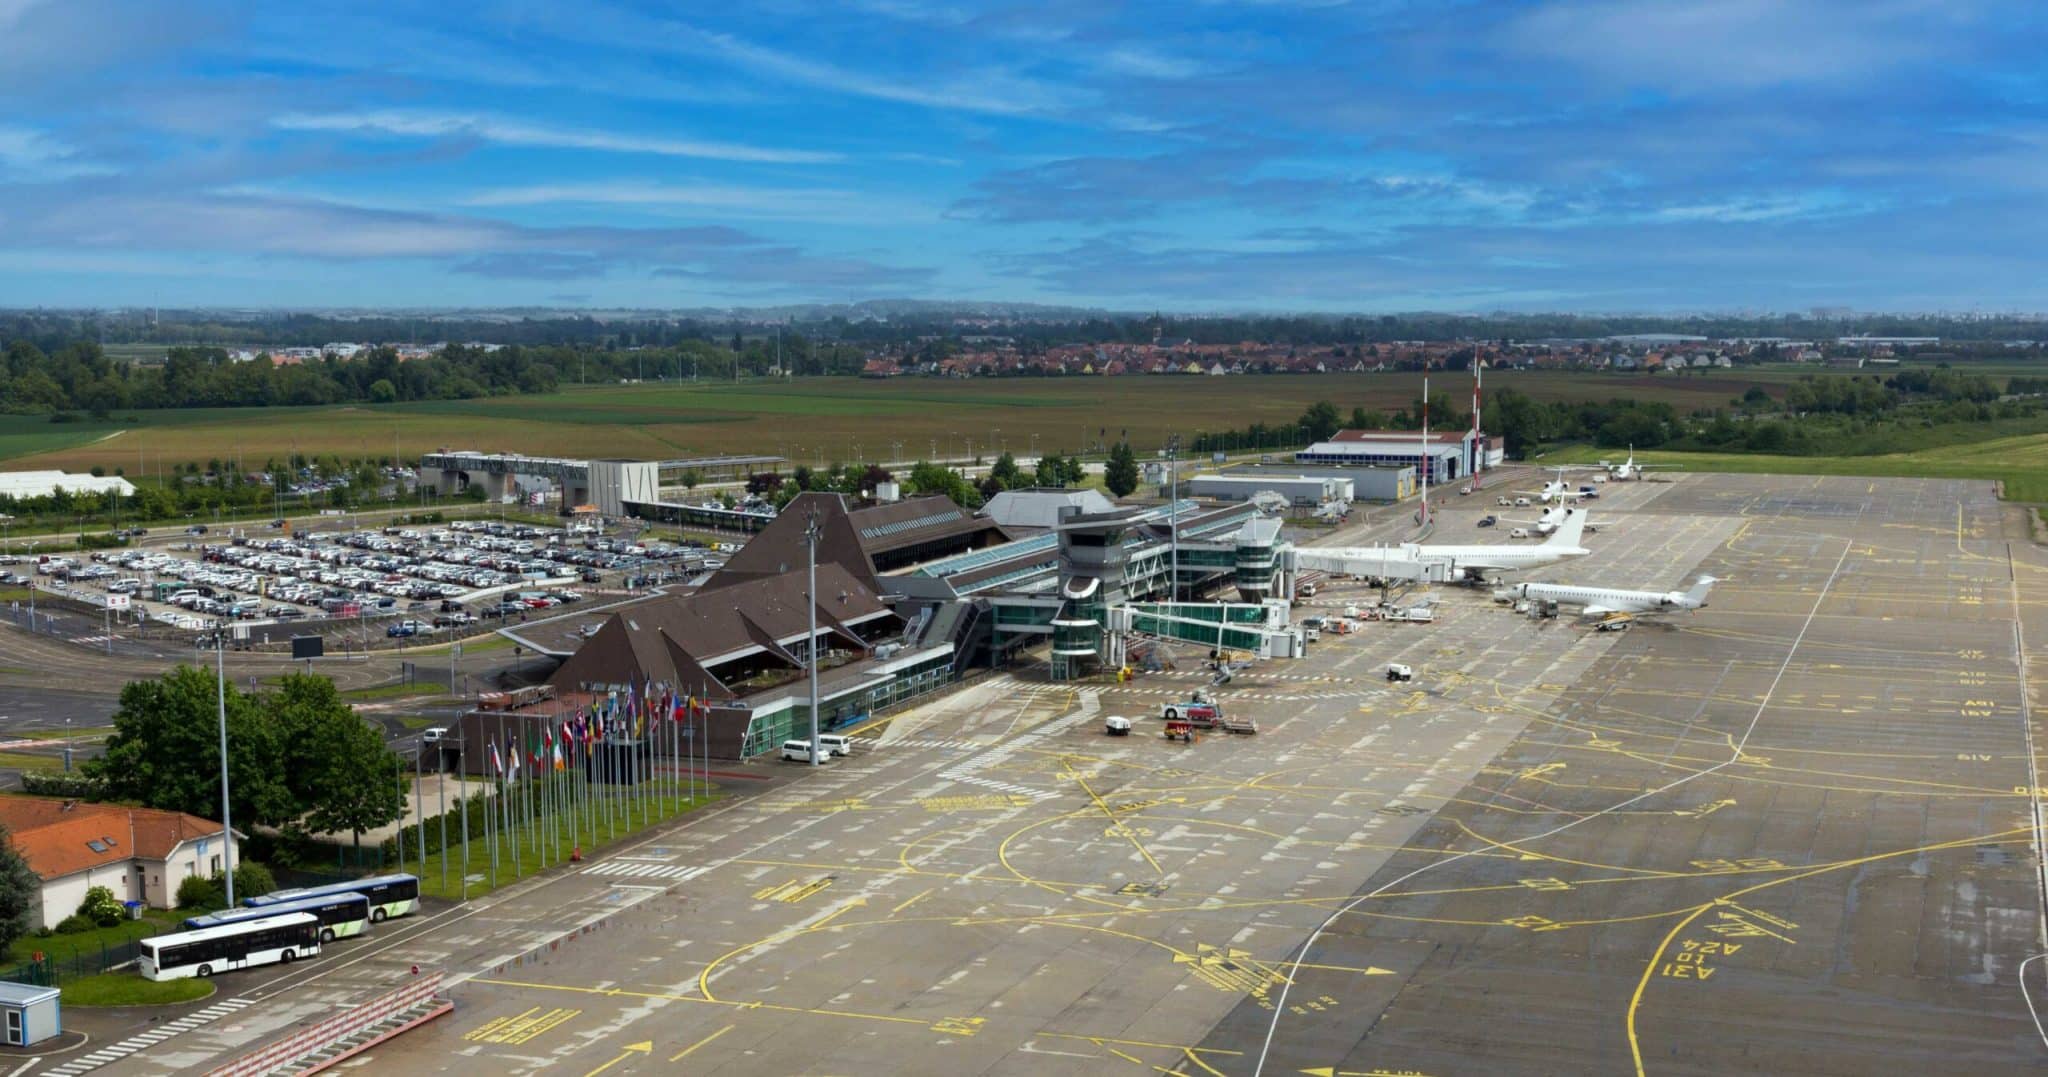 Sân bay Strasbourg đóng cửa từ ngày 14 tháng 14 đến ngày XNUMX tháng XNUMX để cải tạo đường băng